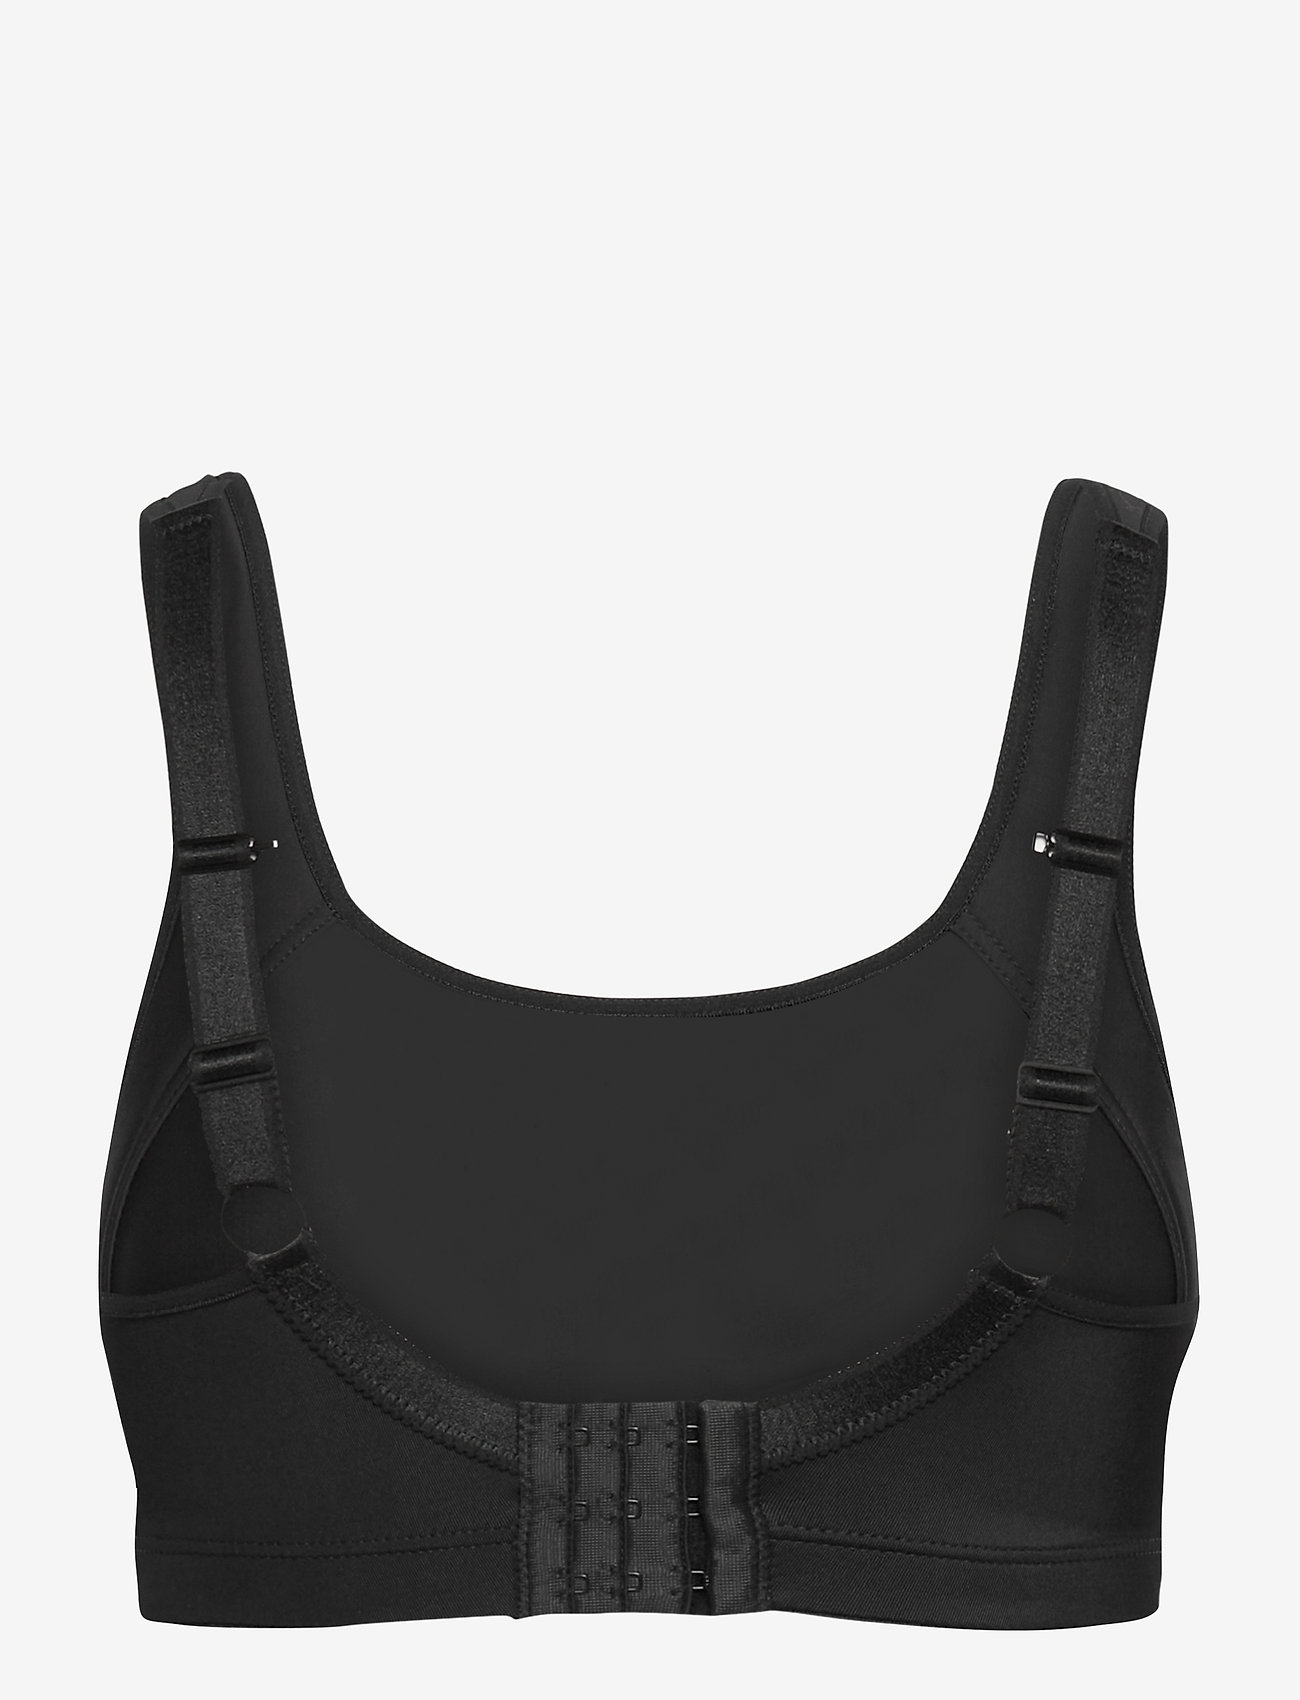 Abecita - Dynamic Sports bra - sport bras: high support - black/grey - 1